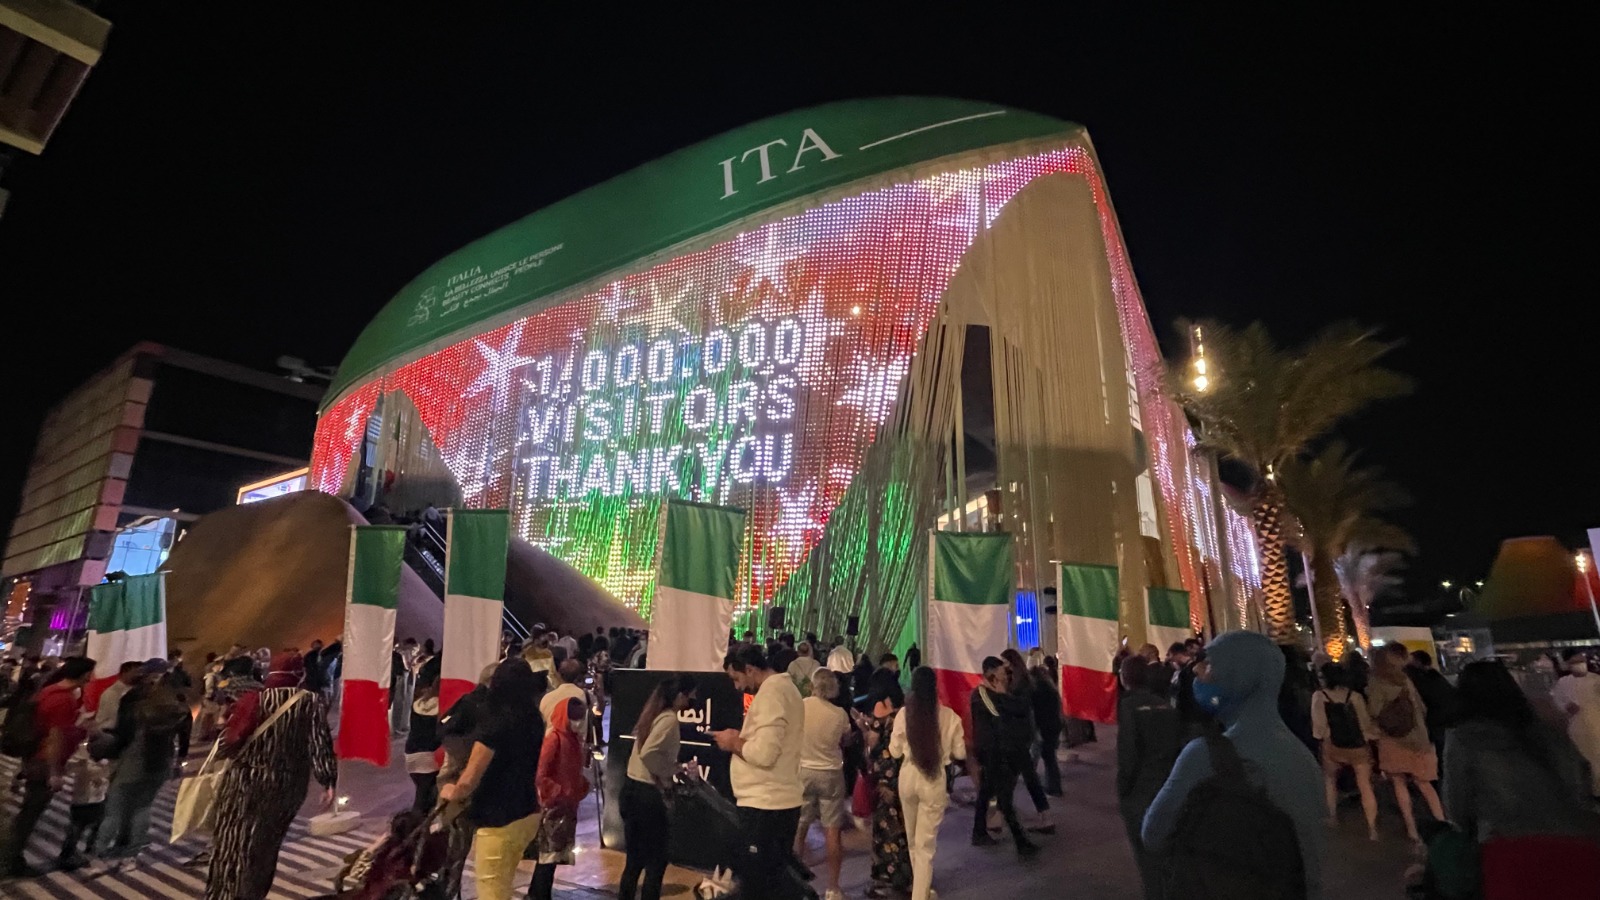 جناح إيطاليا في إكسبو 2020 دبي يسجل مليون زائر و10 ملايين مستخدم افتراضي